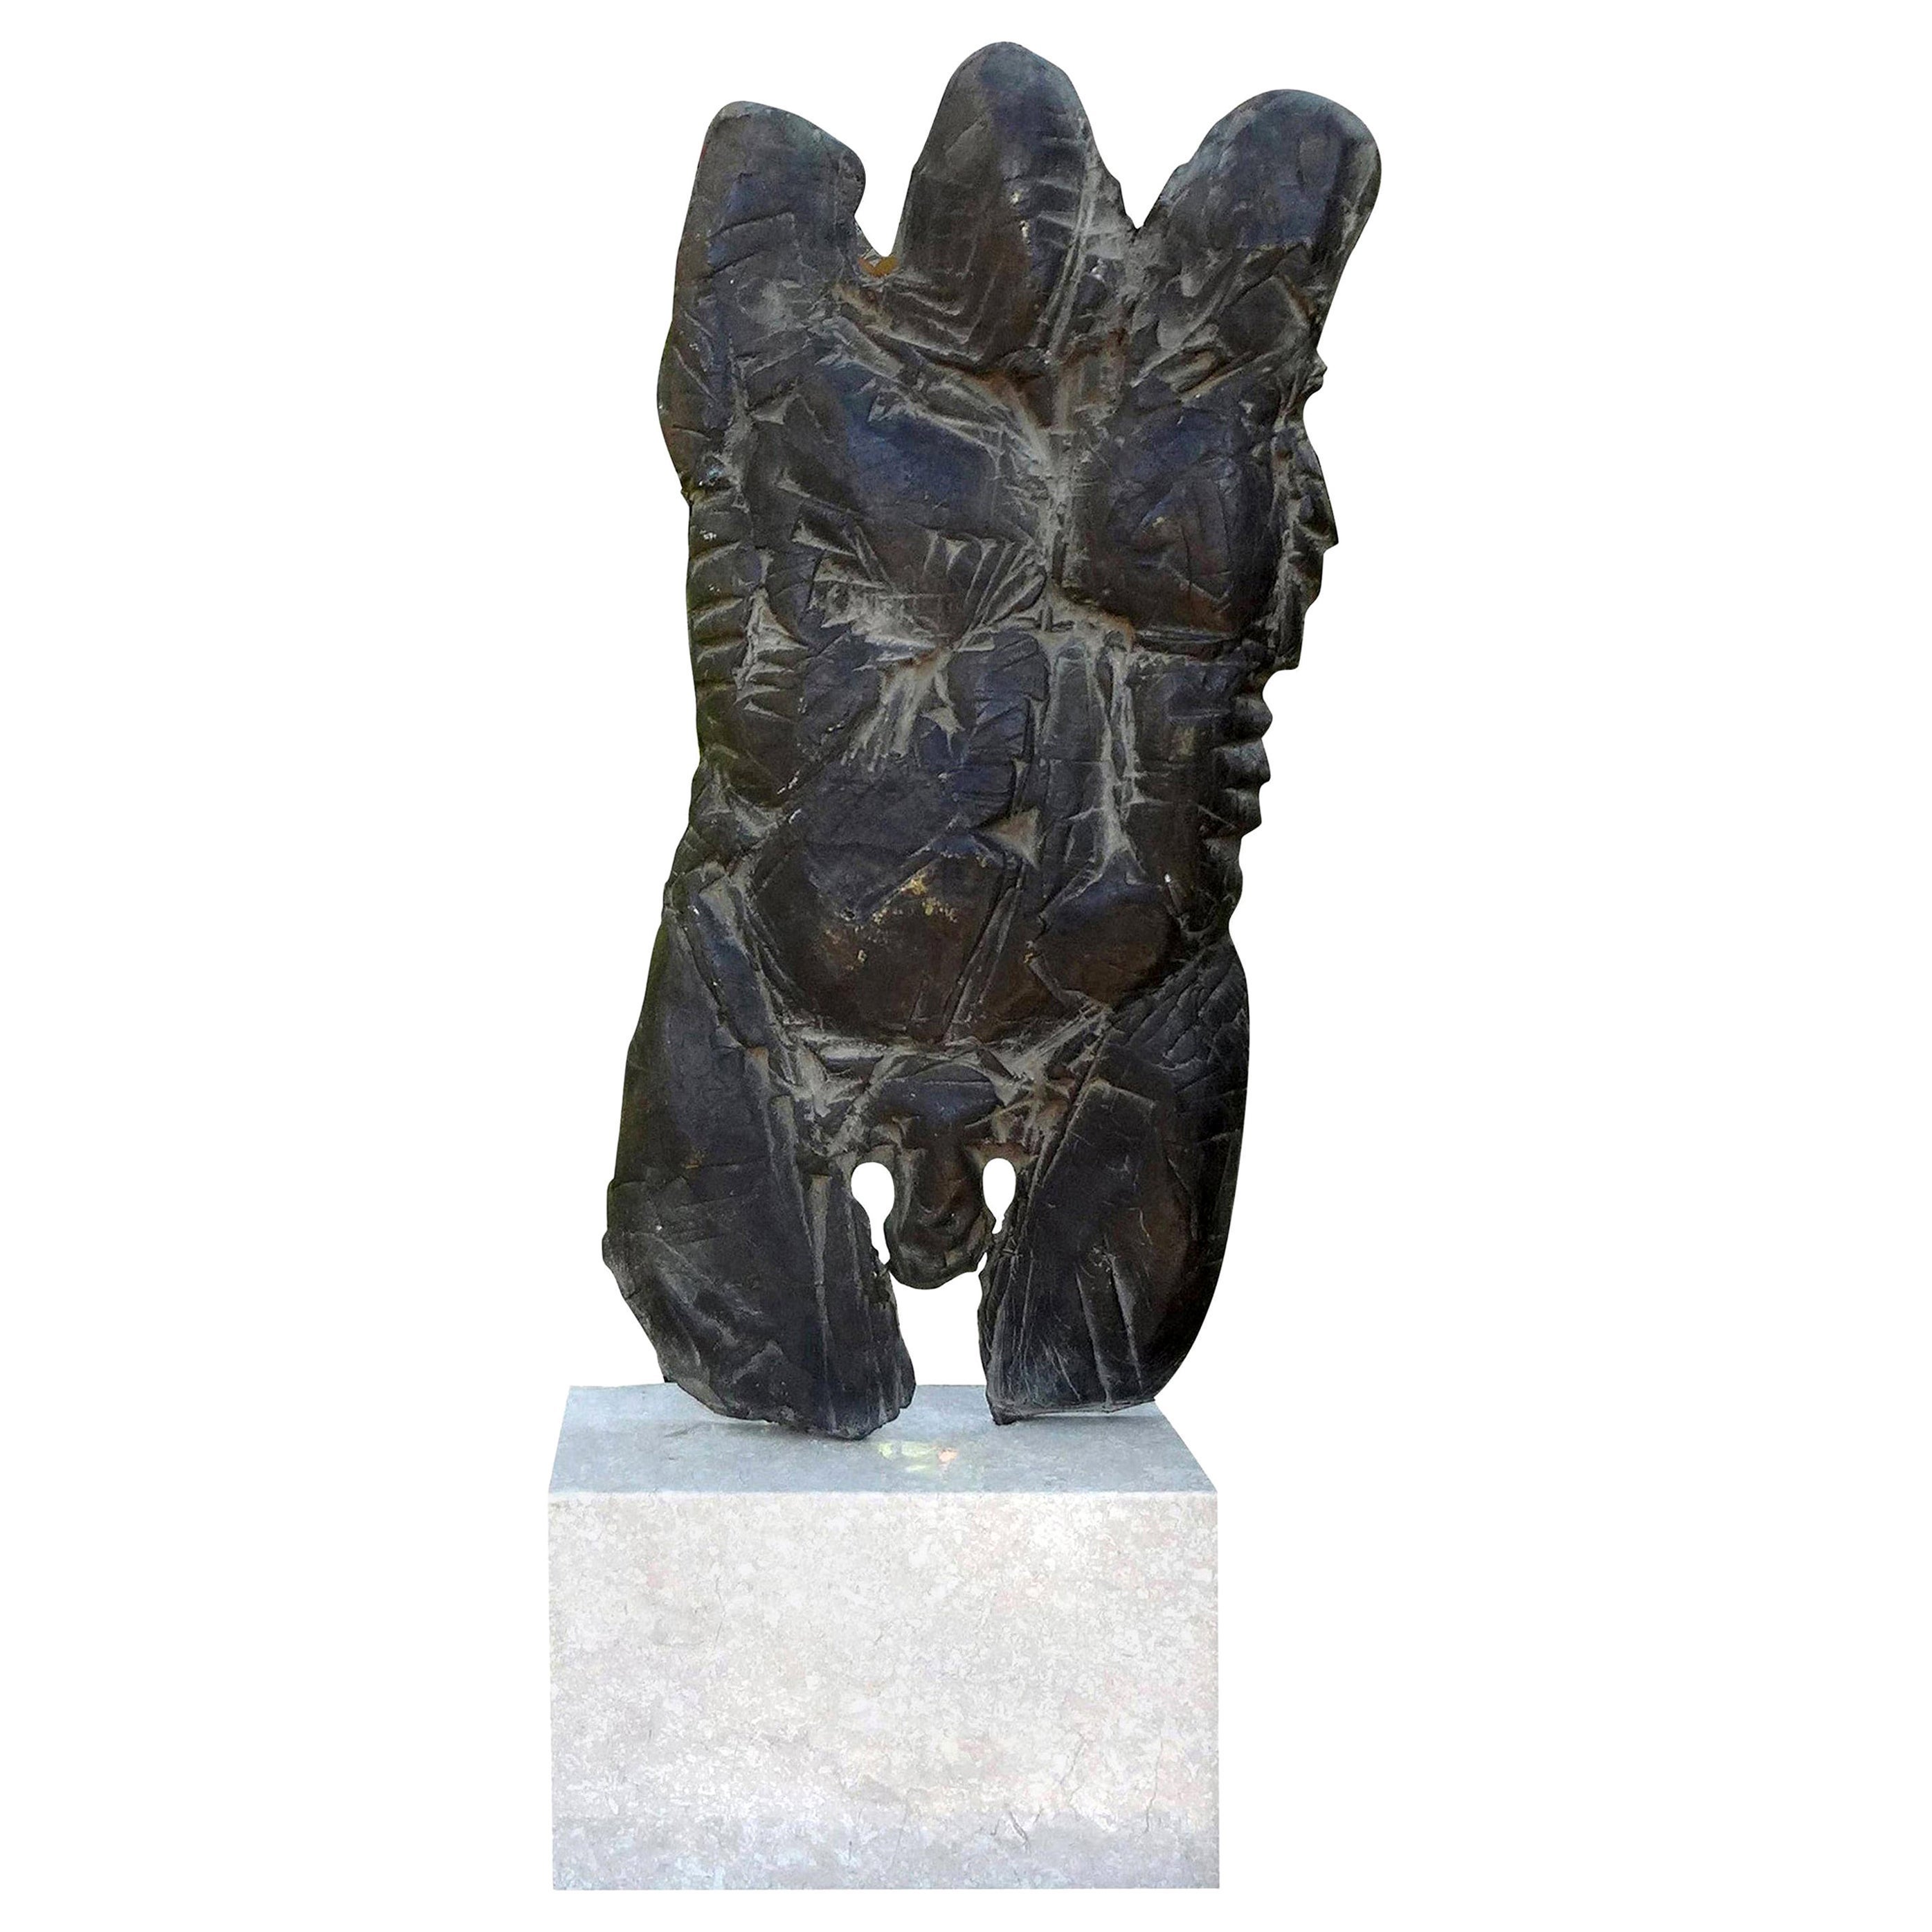 Torse masculin abstrait inspiré de Giacometti, sculpture en bronze sur socle en marbre